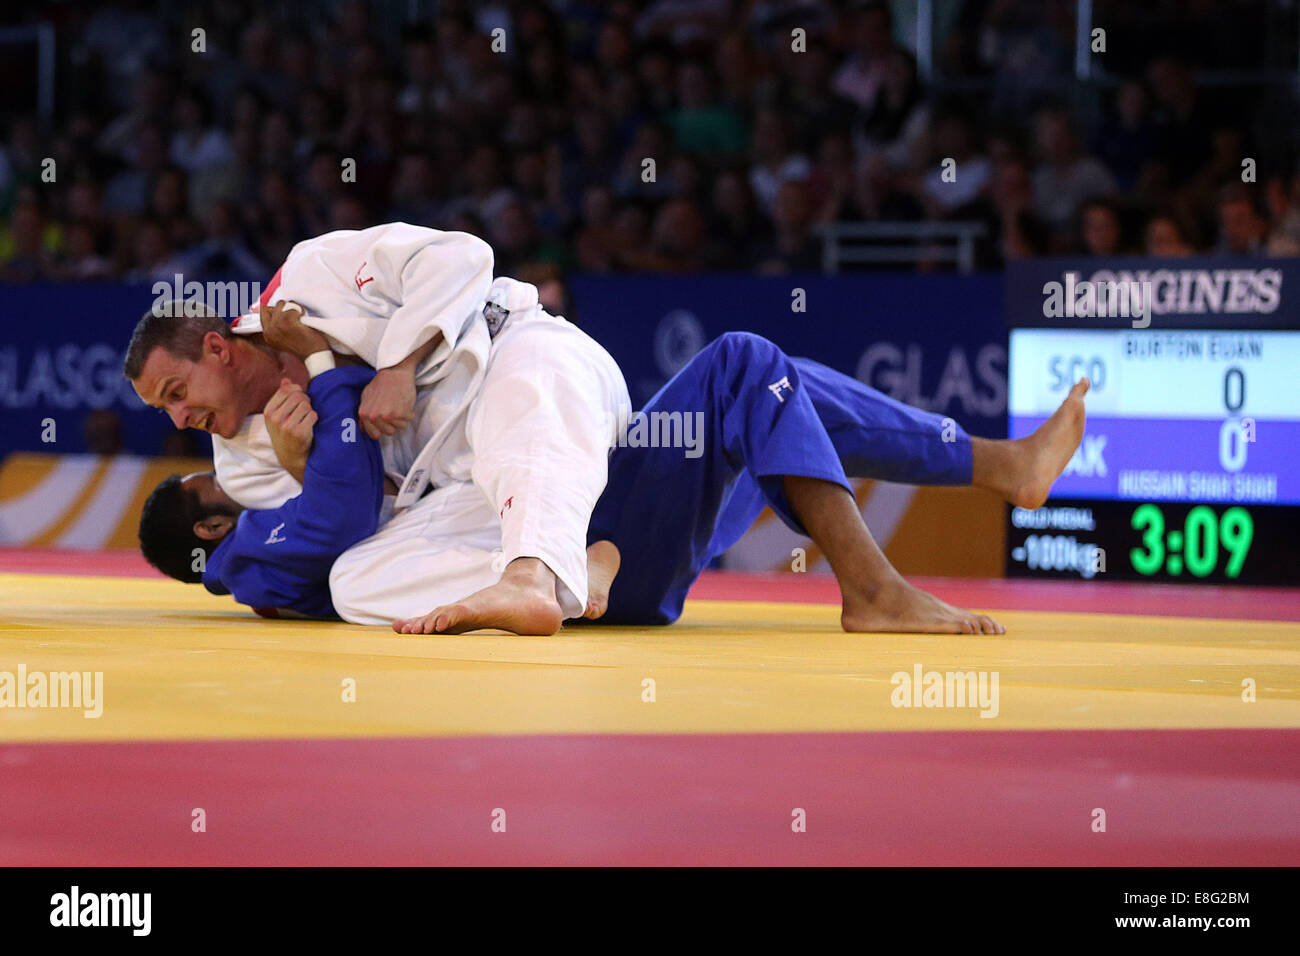 Euan Burton (SCO) (weiß) schlägt Shah Hussain (PAK) (blau) - Judo 100kg Final - SECC - Glasgow Schottland, Glasgow UK - 260714 - 2 Stockfoto